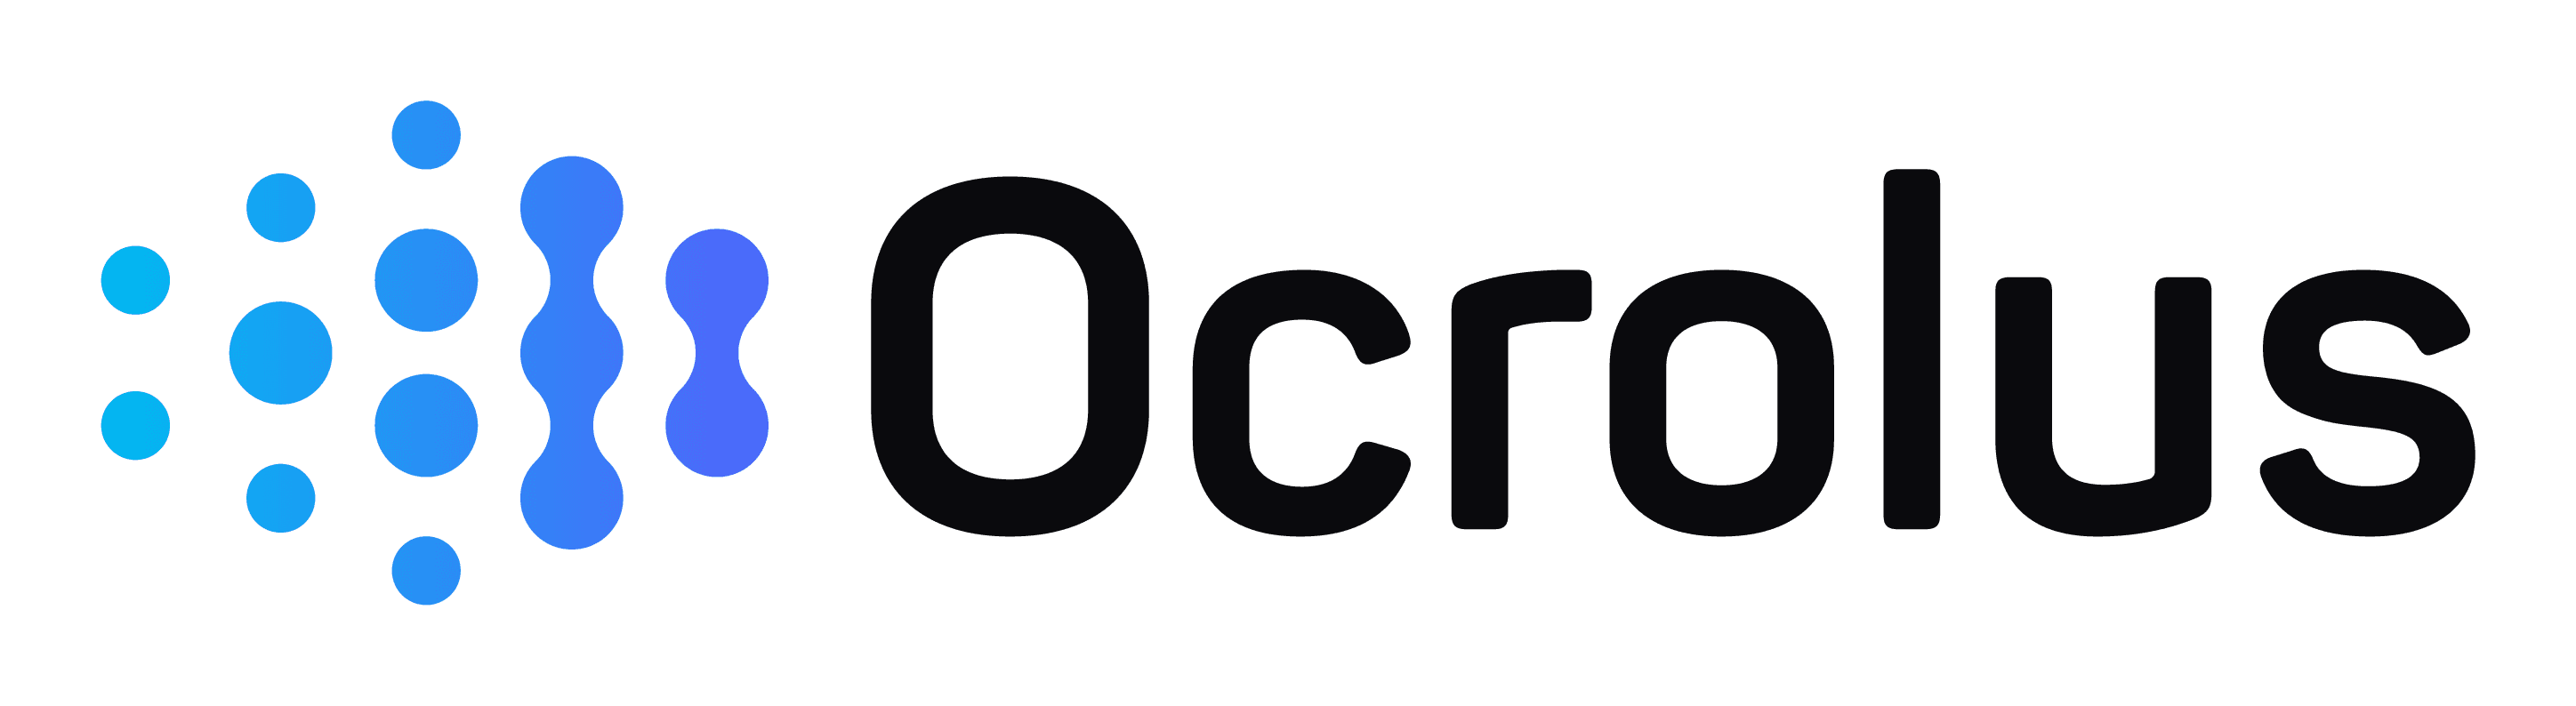 Ocrolus logo black text